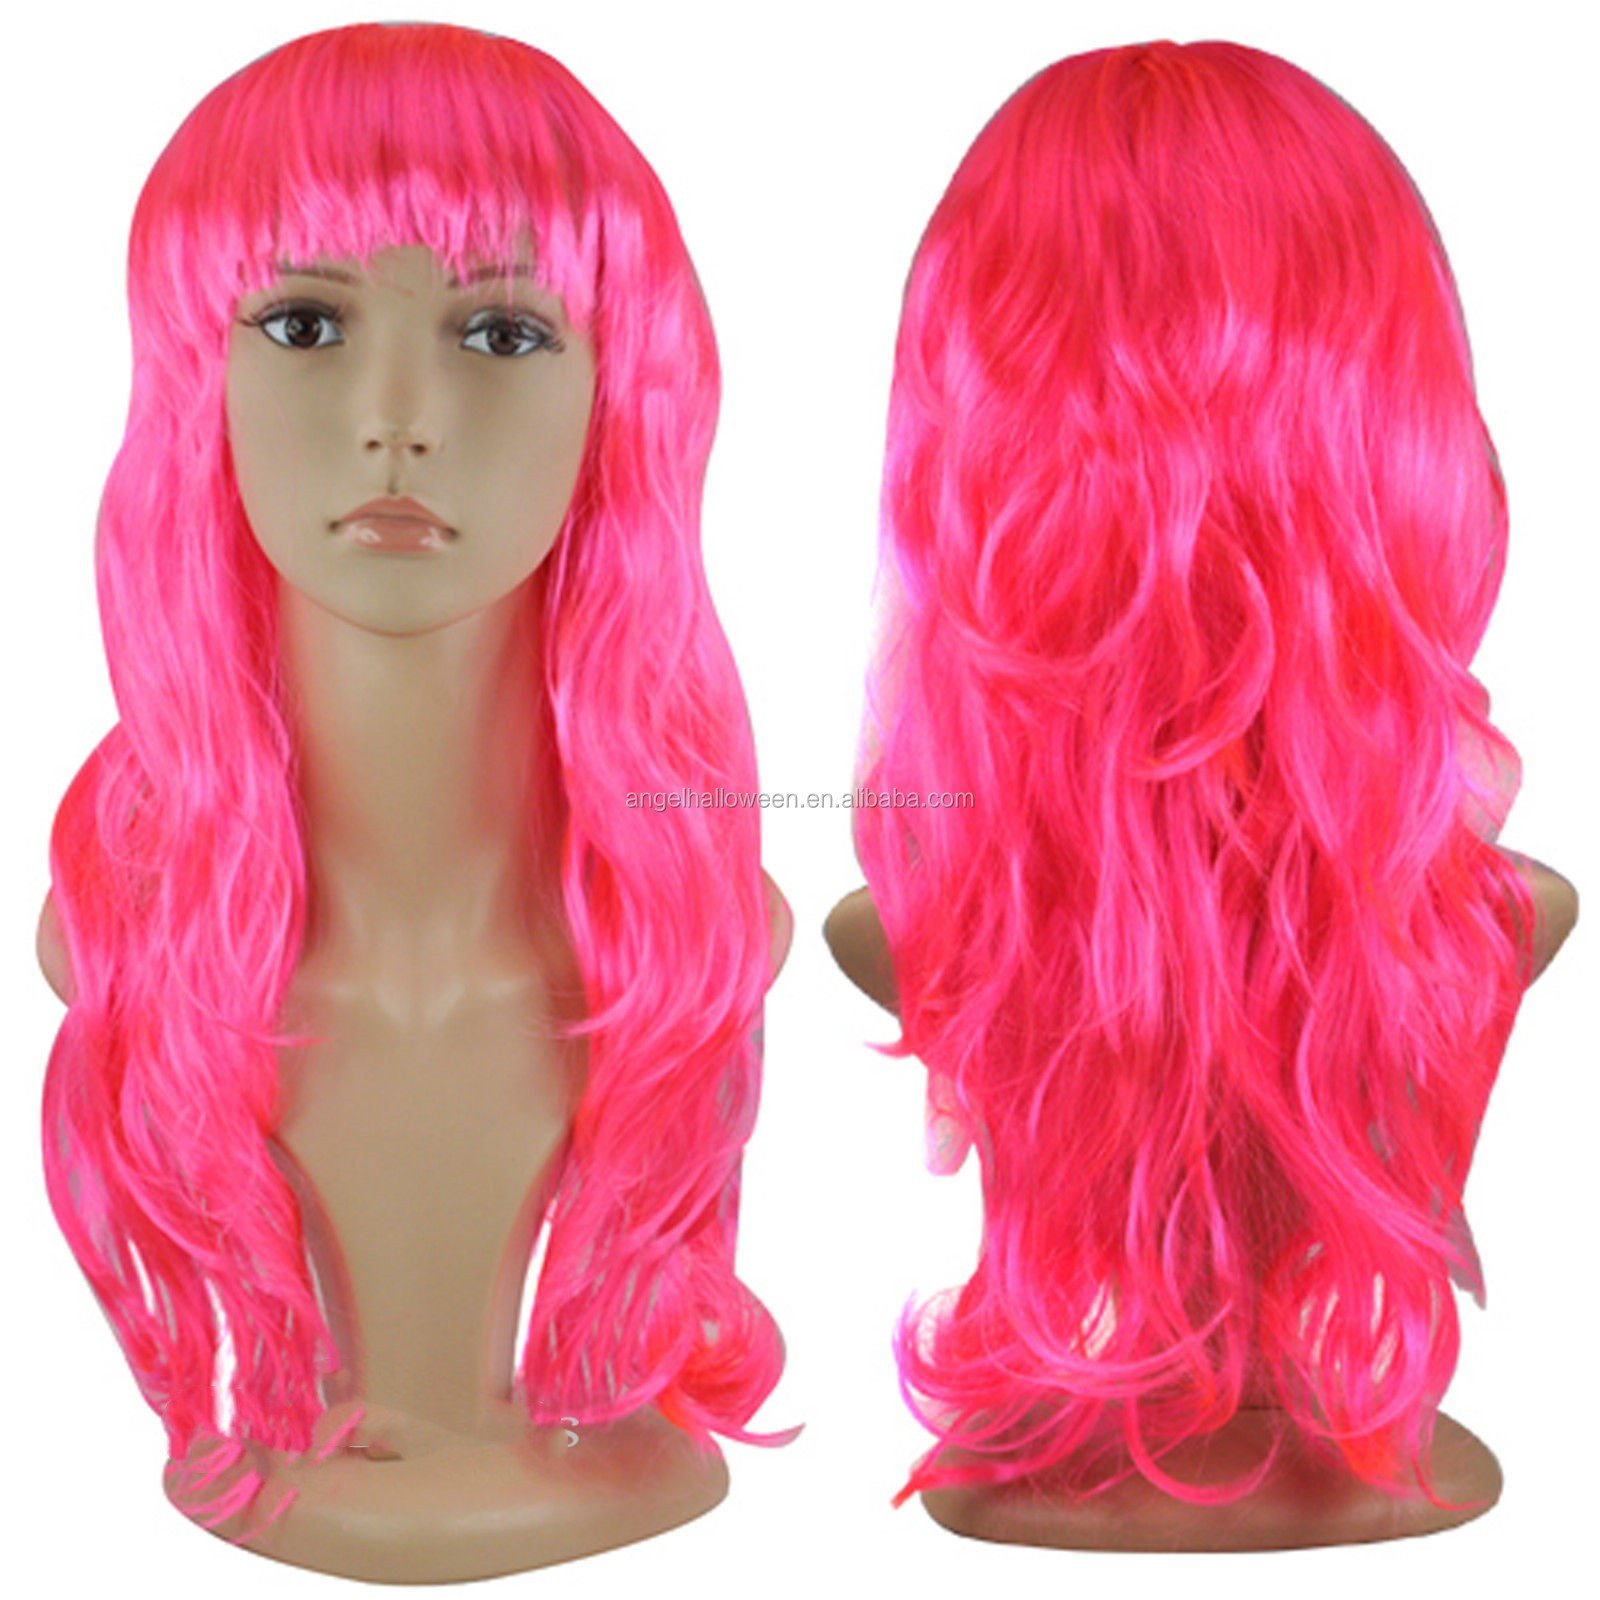 Купить парик в краснодаре. Парик розовый длинный. Синтетический парик. Искусственные парики. Длинные парики для детей.